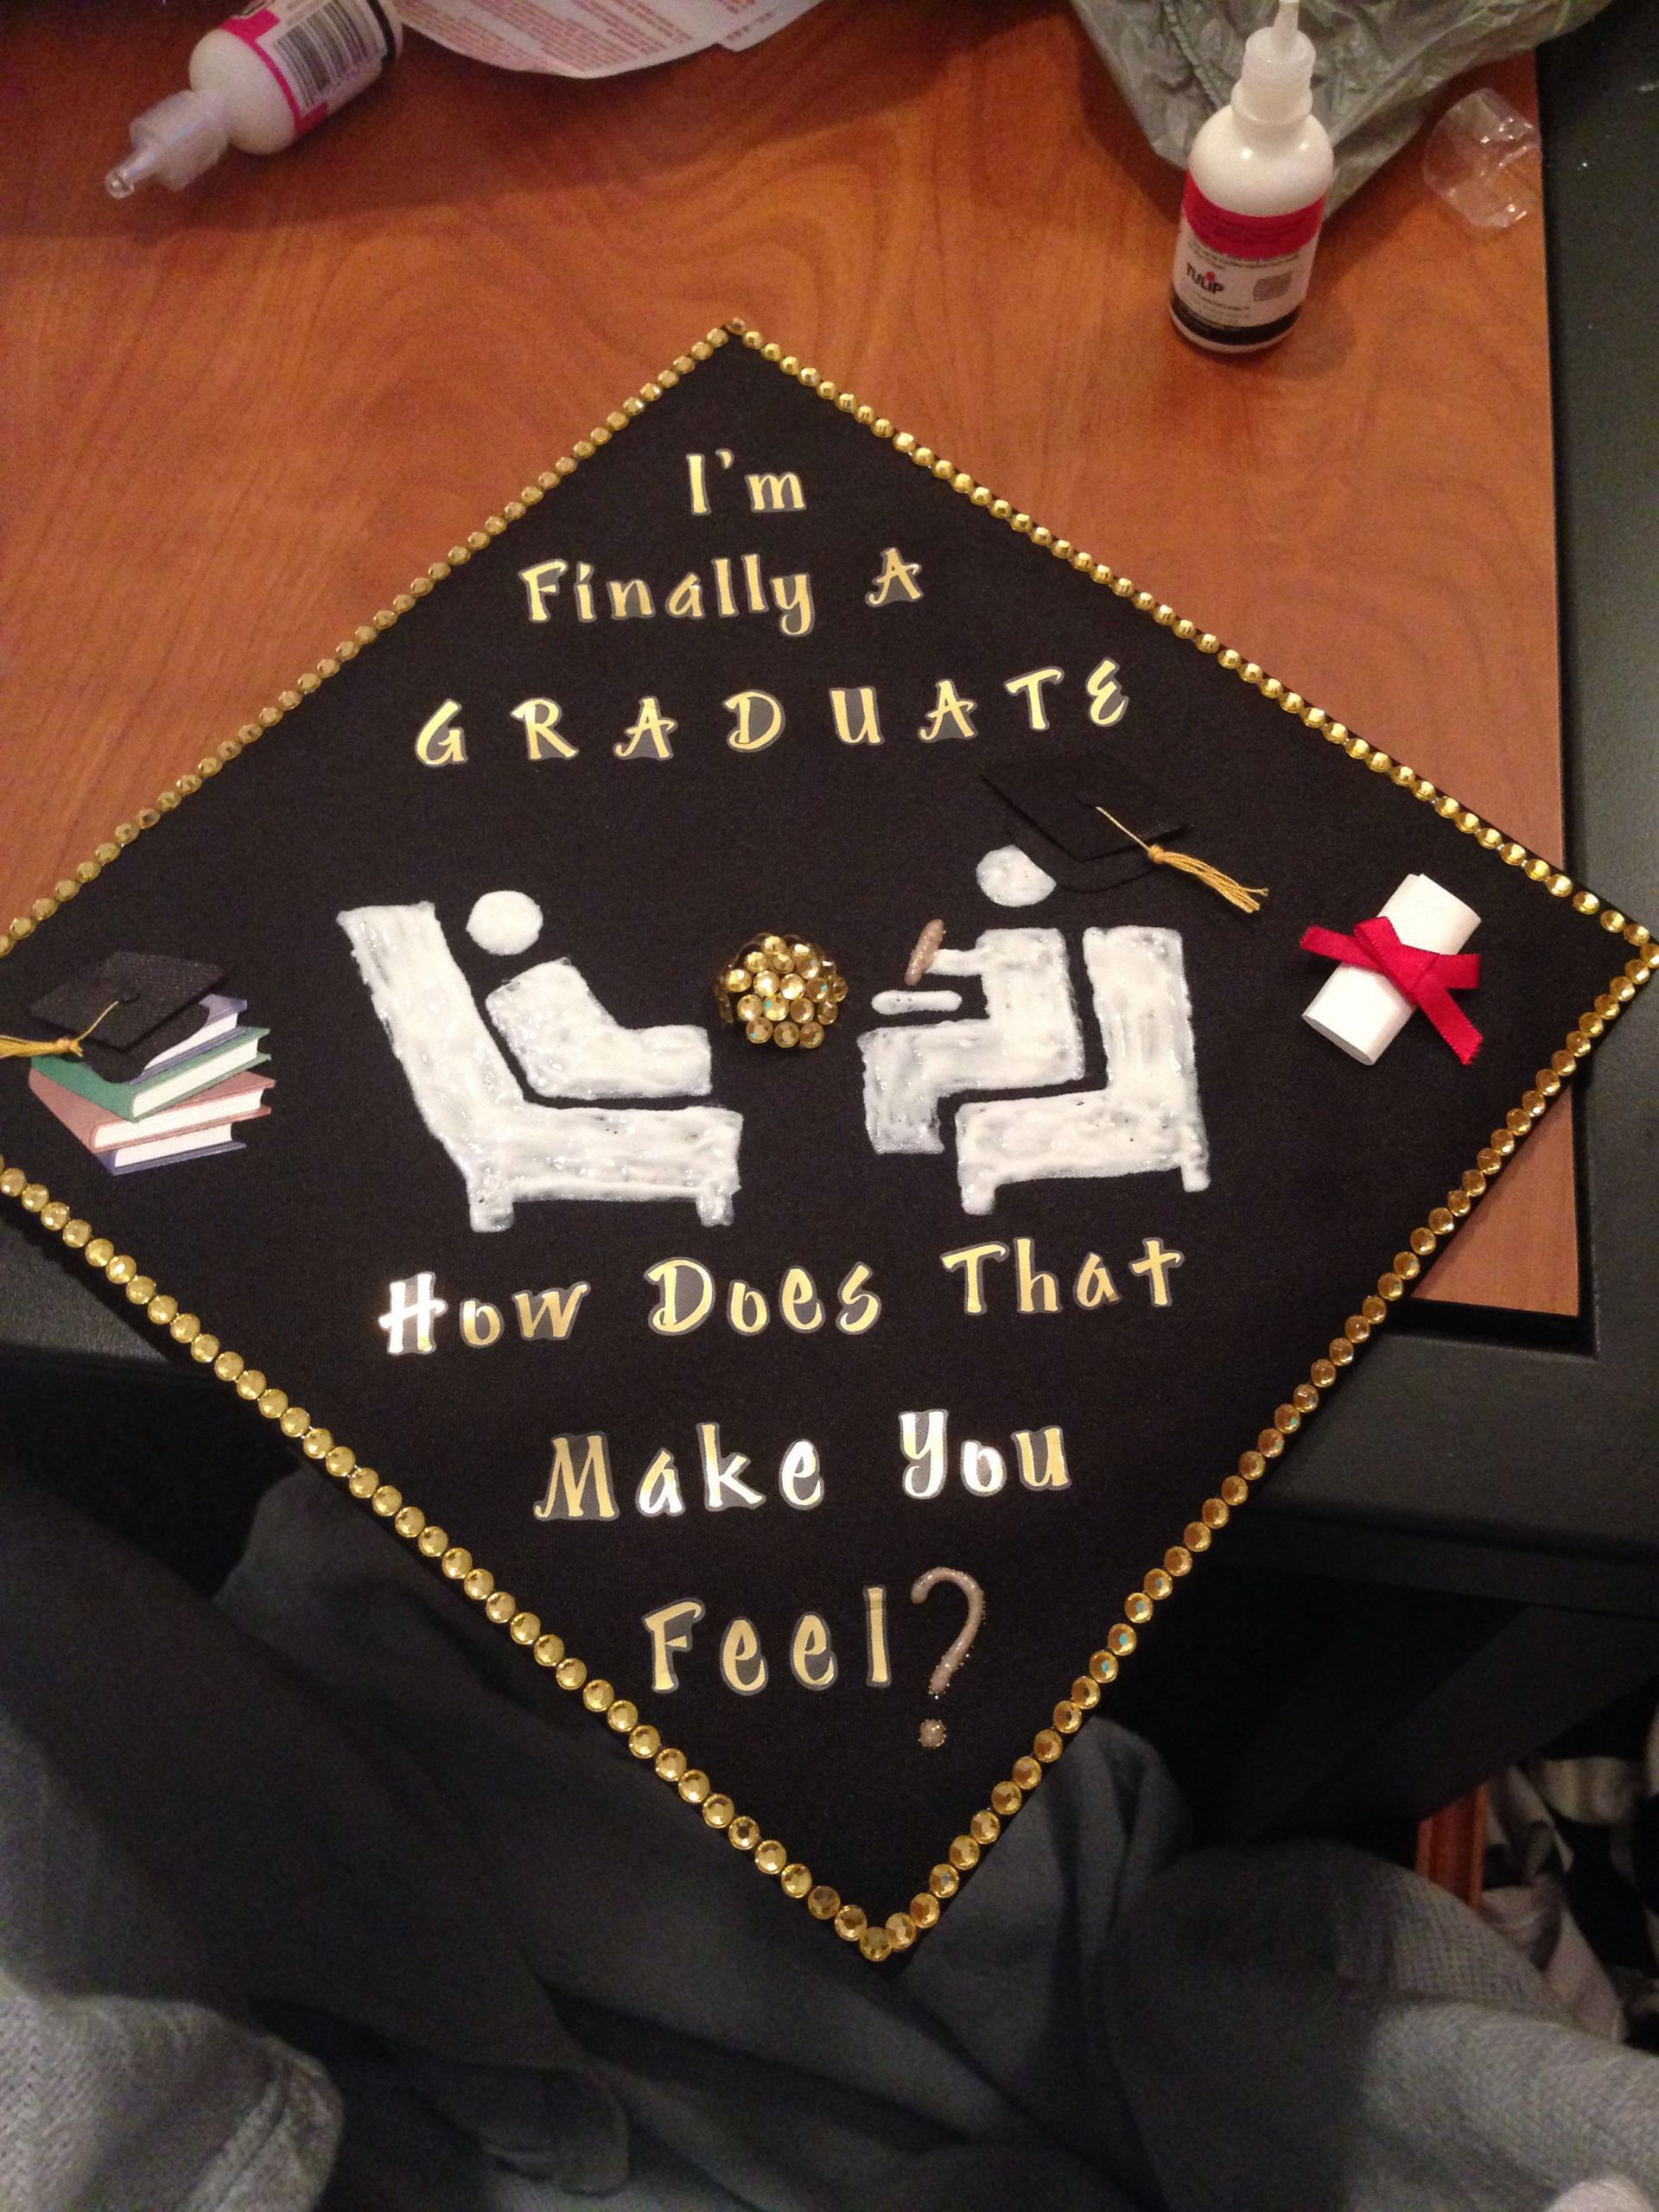 Masters Degree Graduation Party Ideas
 Hahaha too funny Grad cap idea for psychology majors